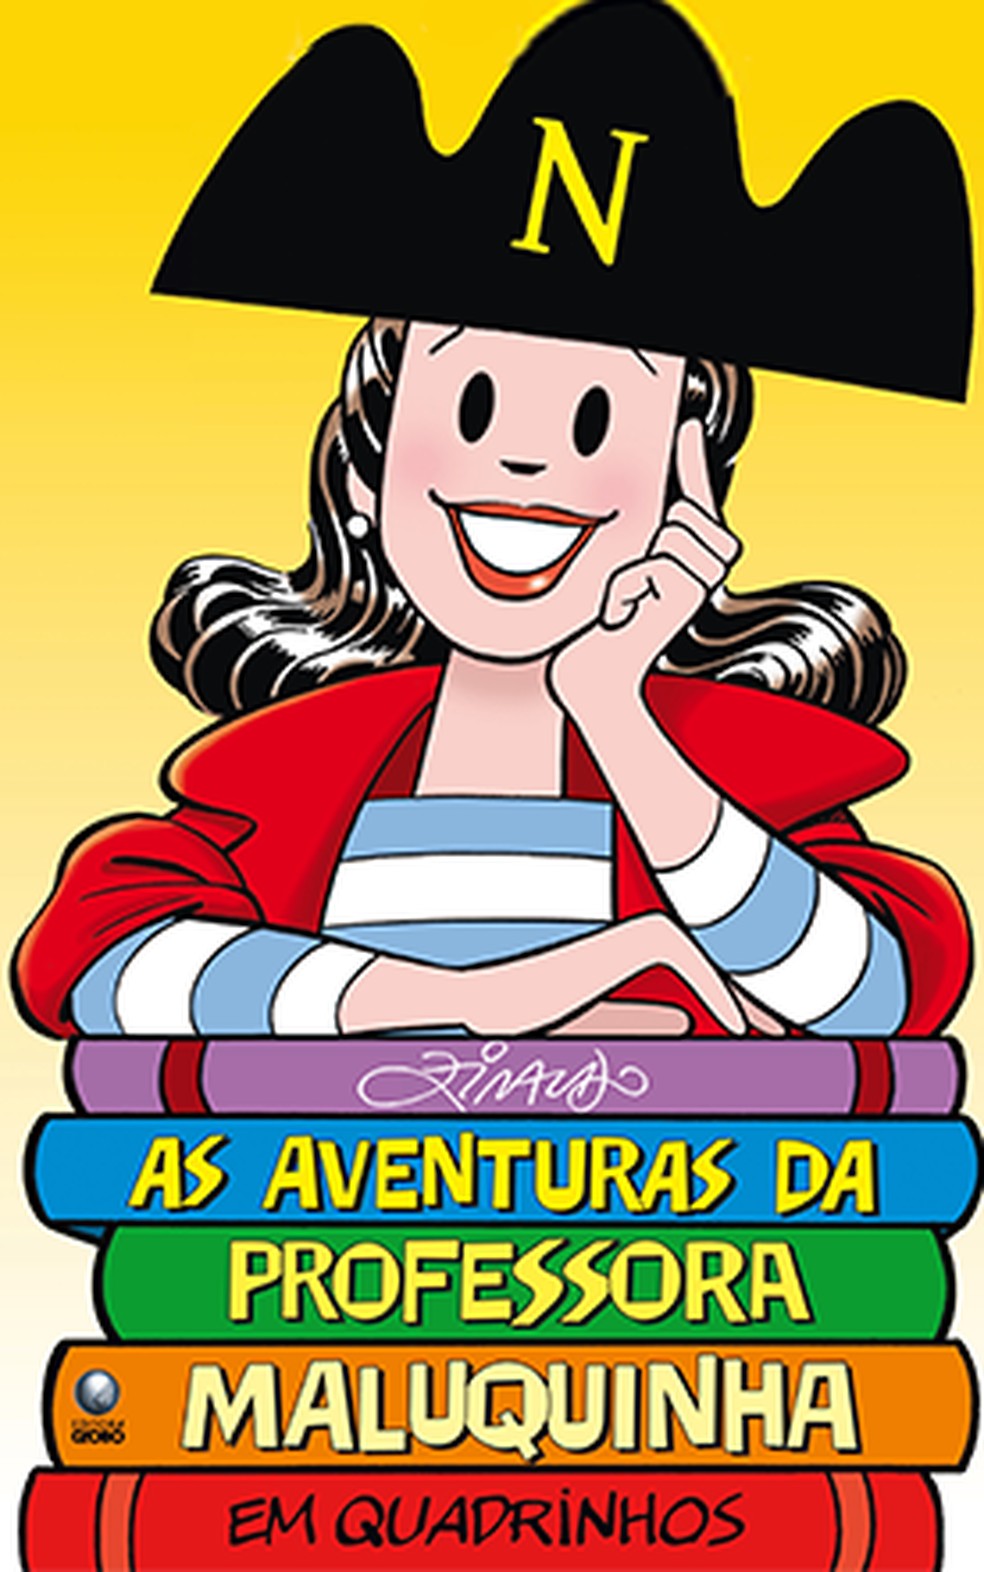 Capa do livro "As aventuras da Professora Maluquinha" — Foto: Reprodução Instituto Ziraldo